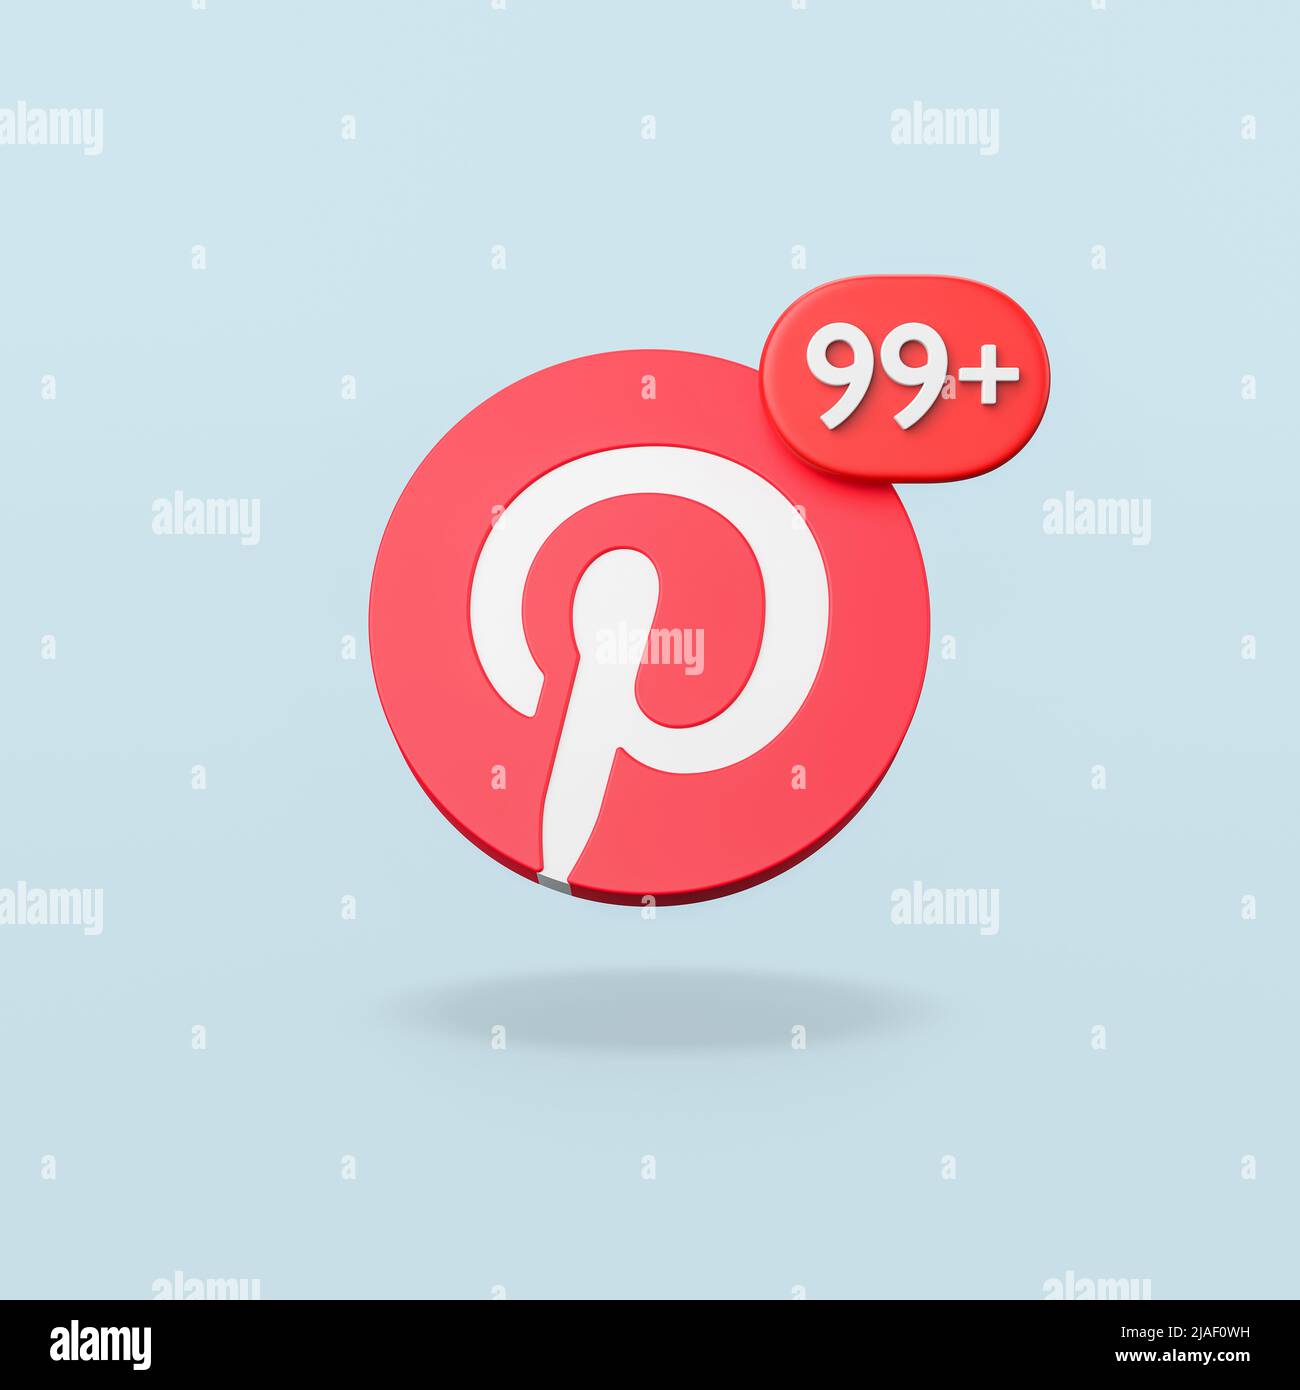 Logotipo Pinterest con notificación de 99 sobre fondo azul Foto de stock